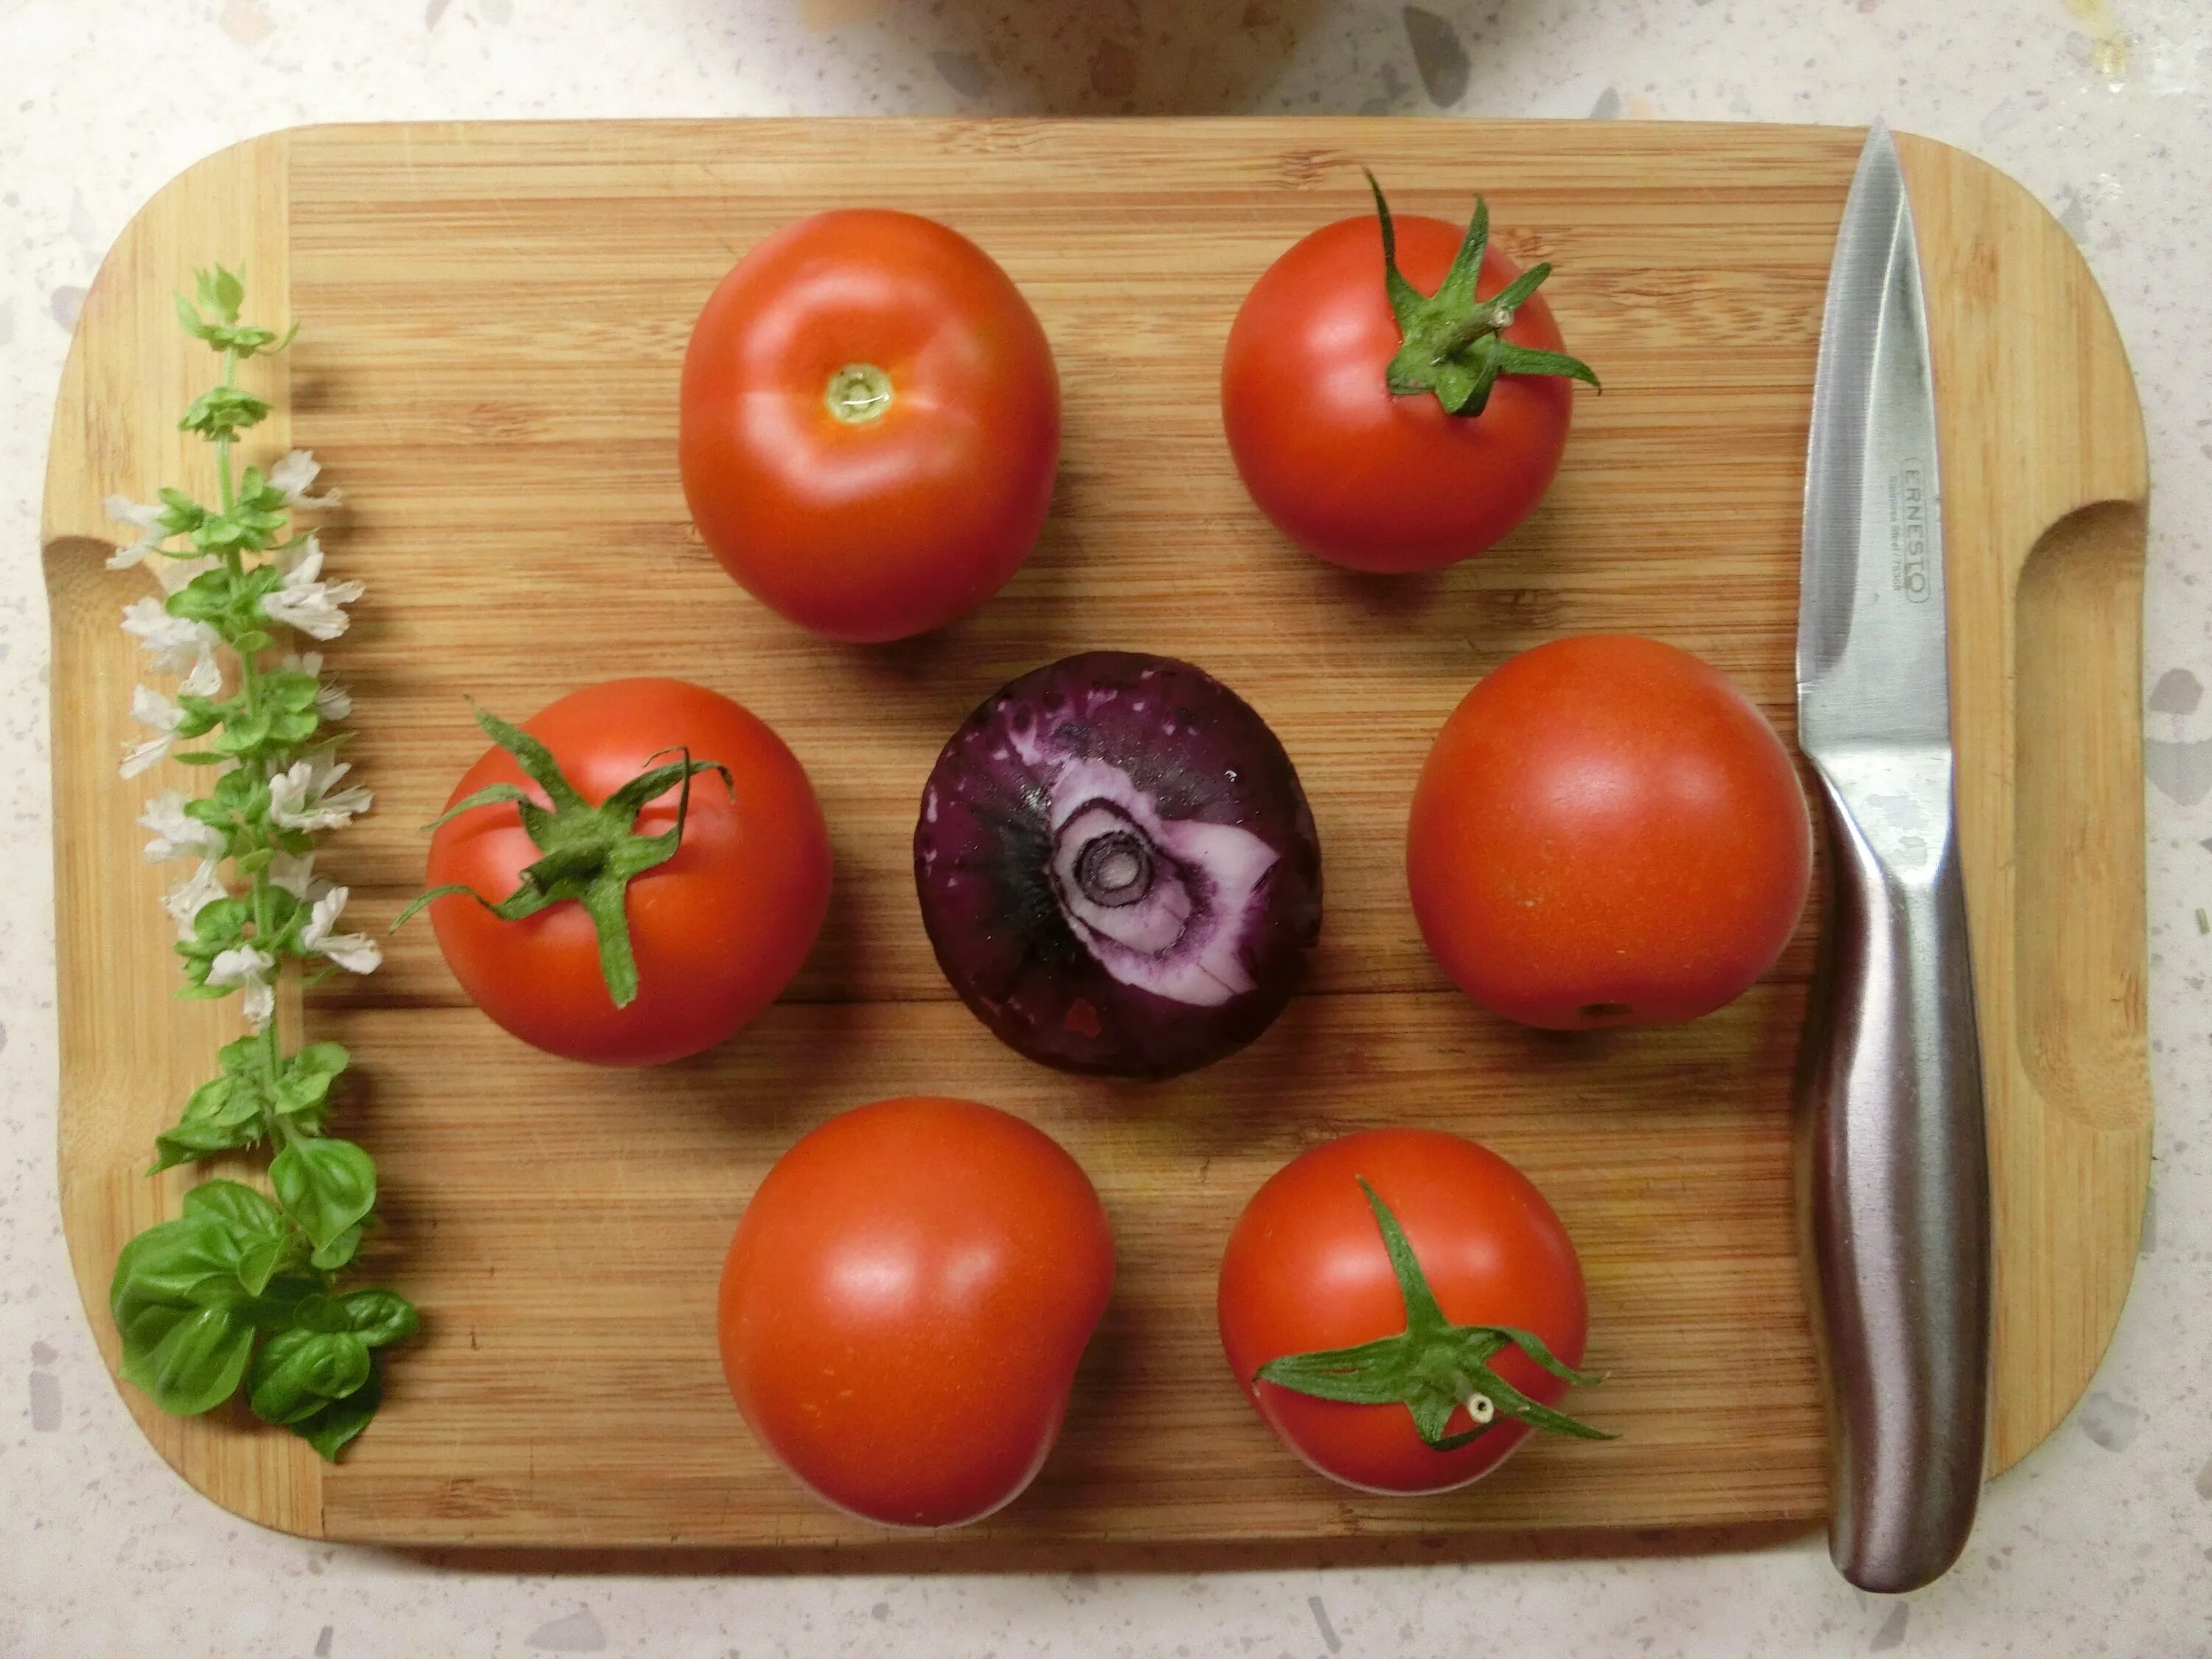 Tomato and onion and. Овощи помидор. Помидоры с луком. Томаты с луком. Помидоры на грядке.